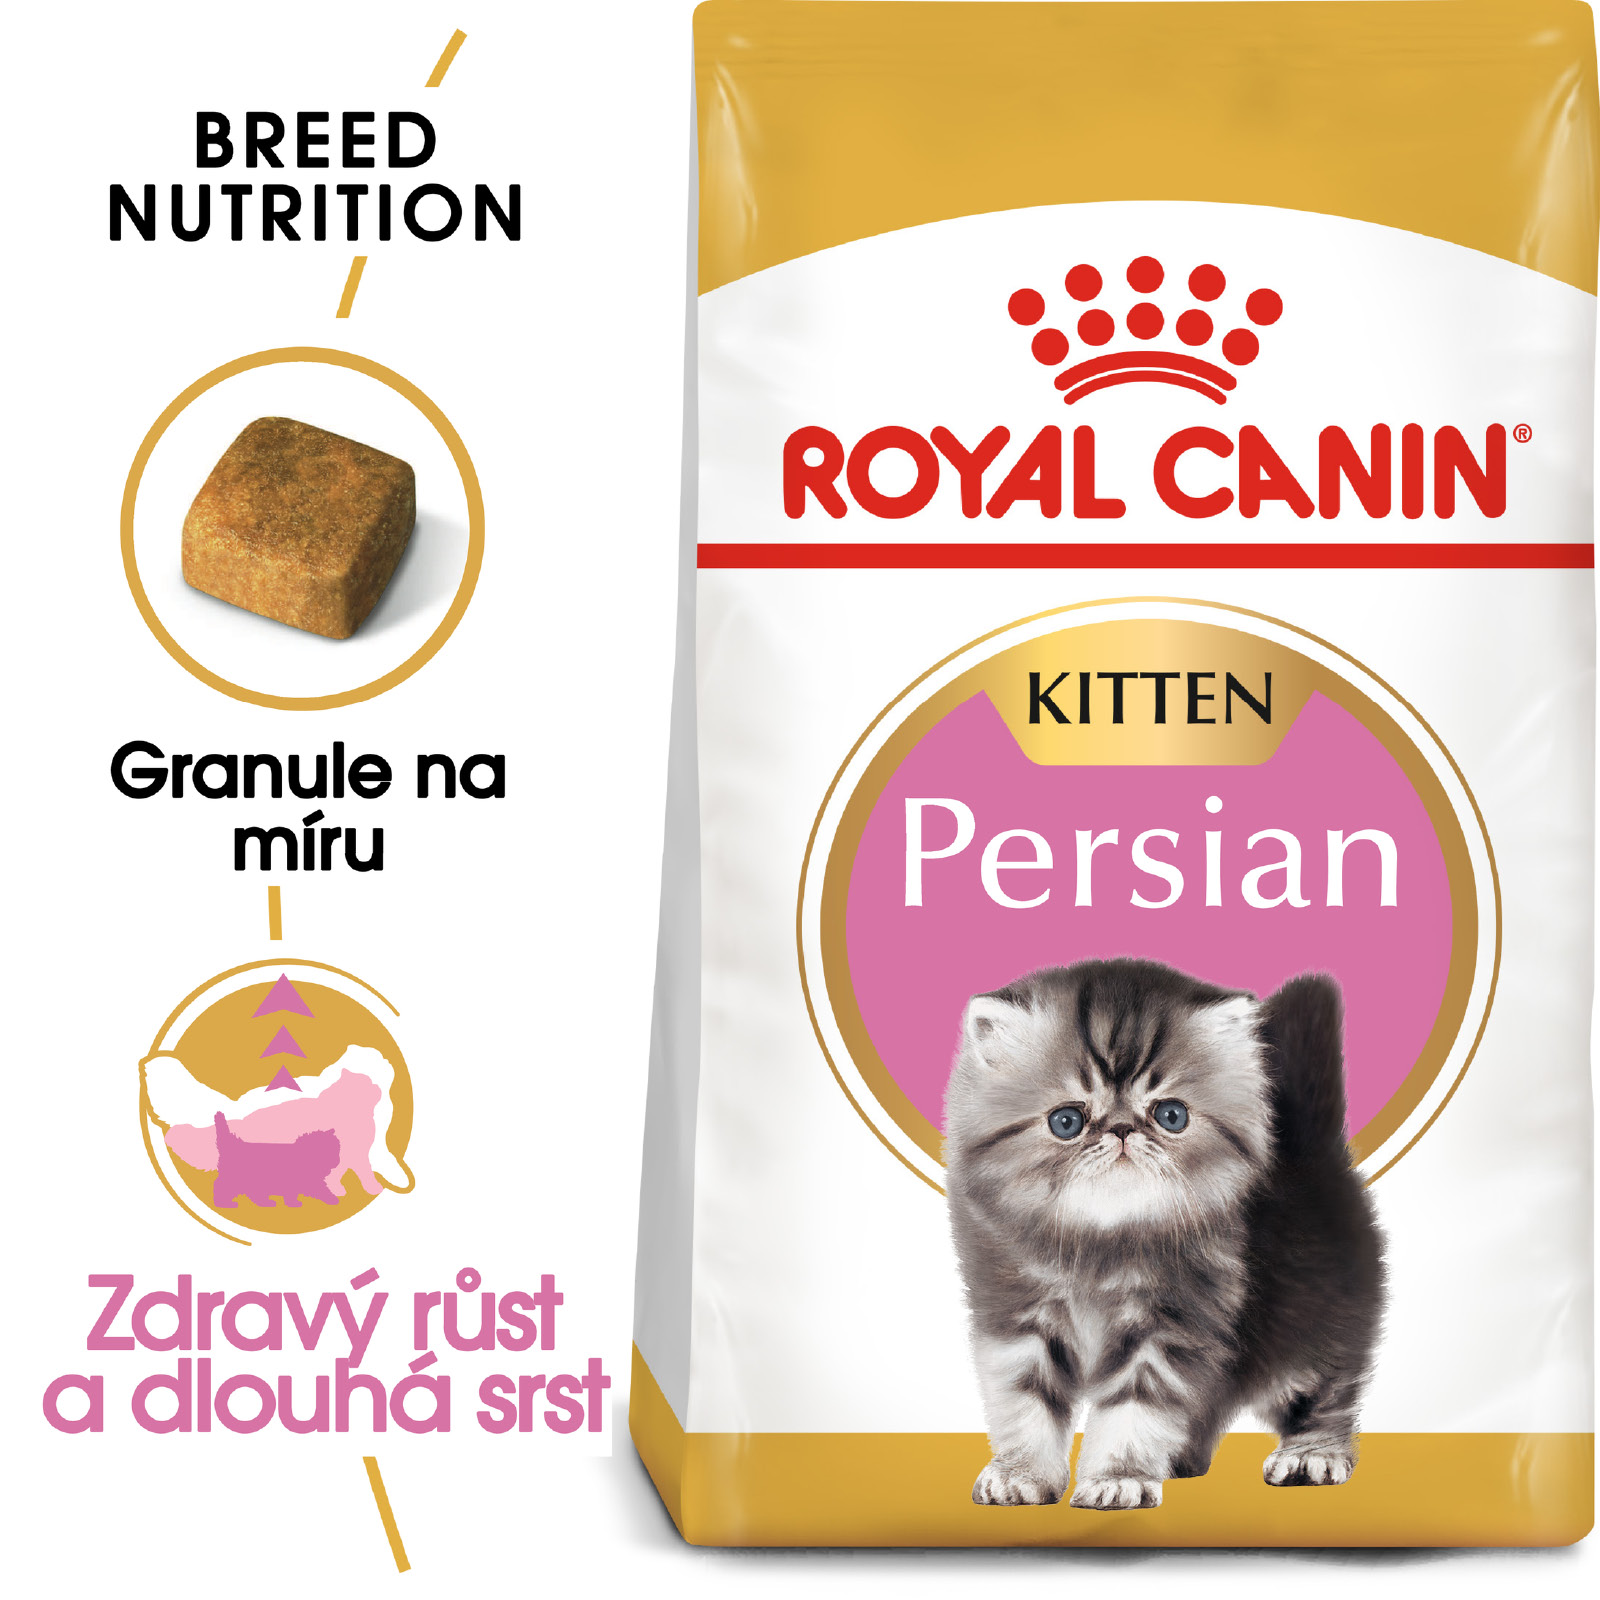 Royal Canin KITTEN PERSKÁ - granule pro perská koťata